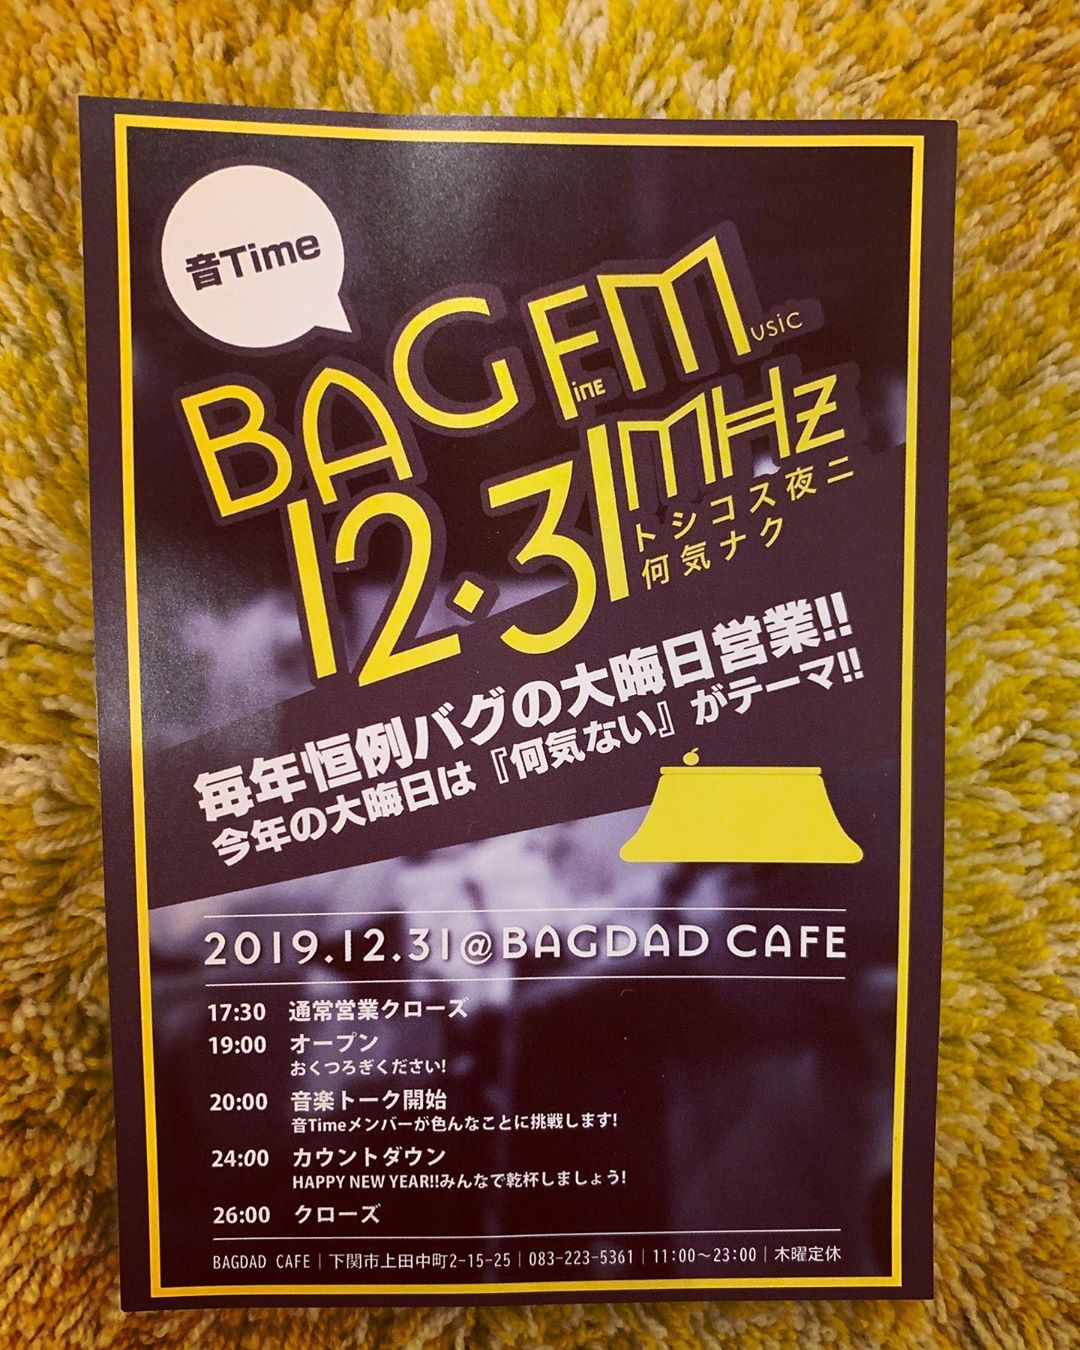 BAGDAD CAFE大晦日営業「BAG FM 12.31 MHZ トシコス夜二何気ナク」